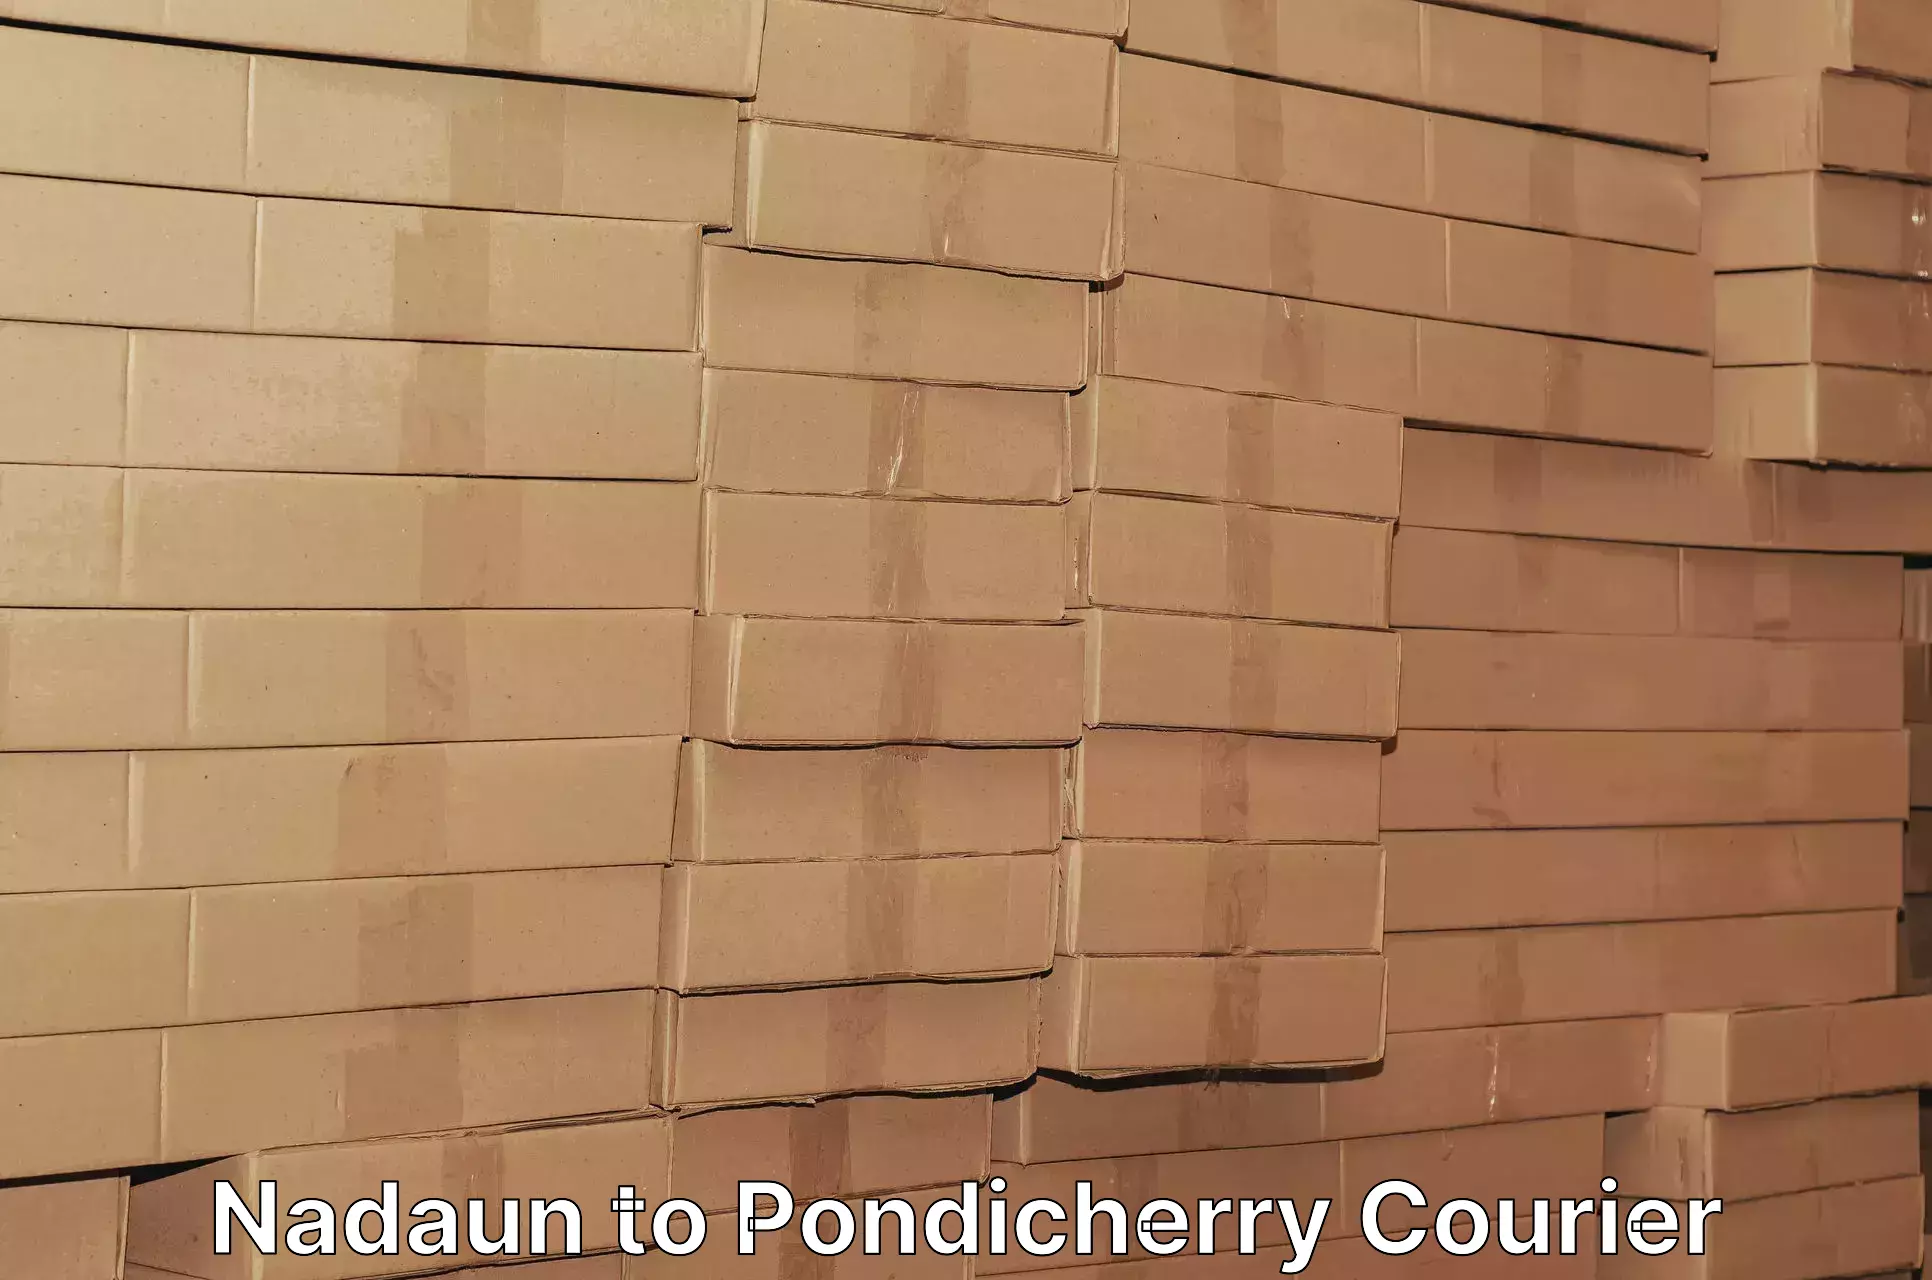 24-hour courier service Nadaun to Pondicherry